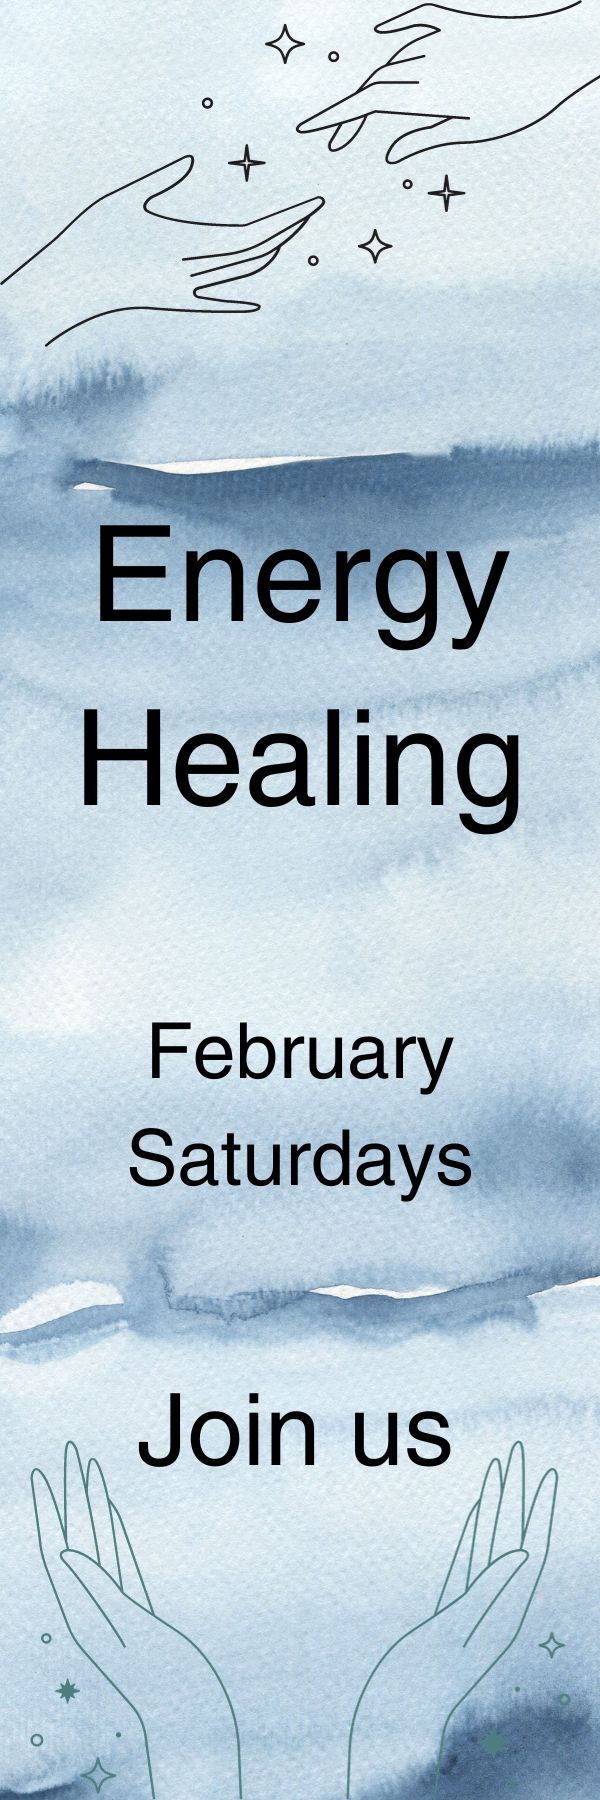 healing-energy-class.jpg